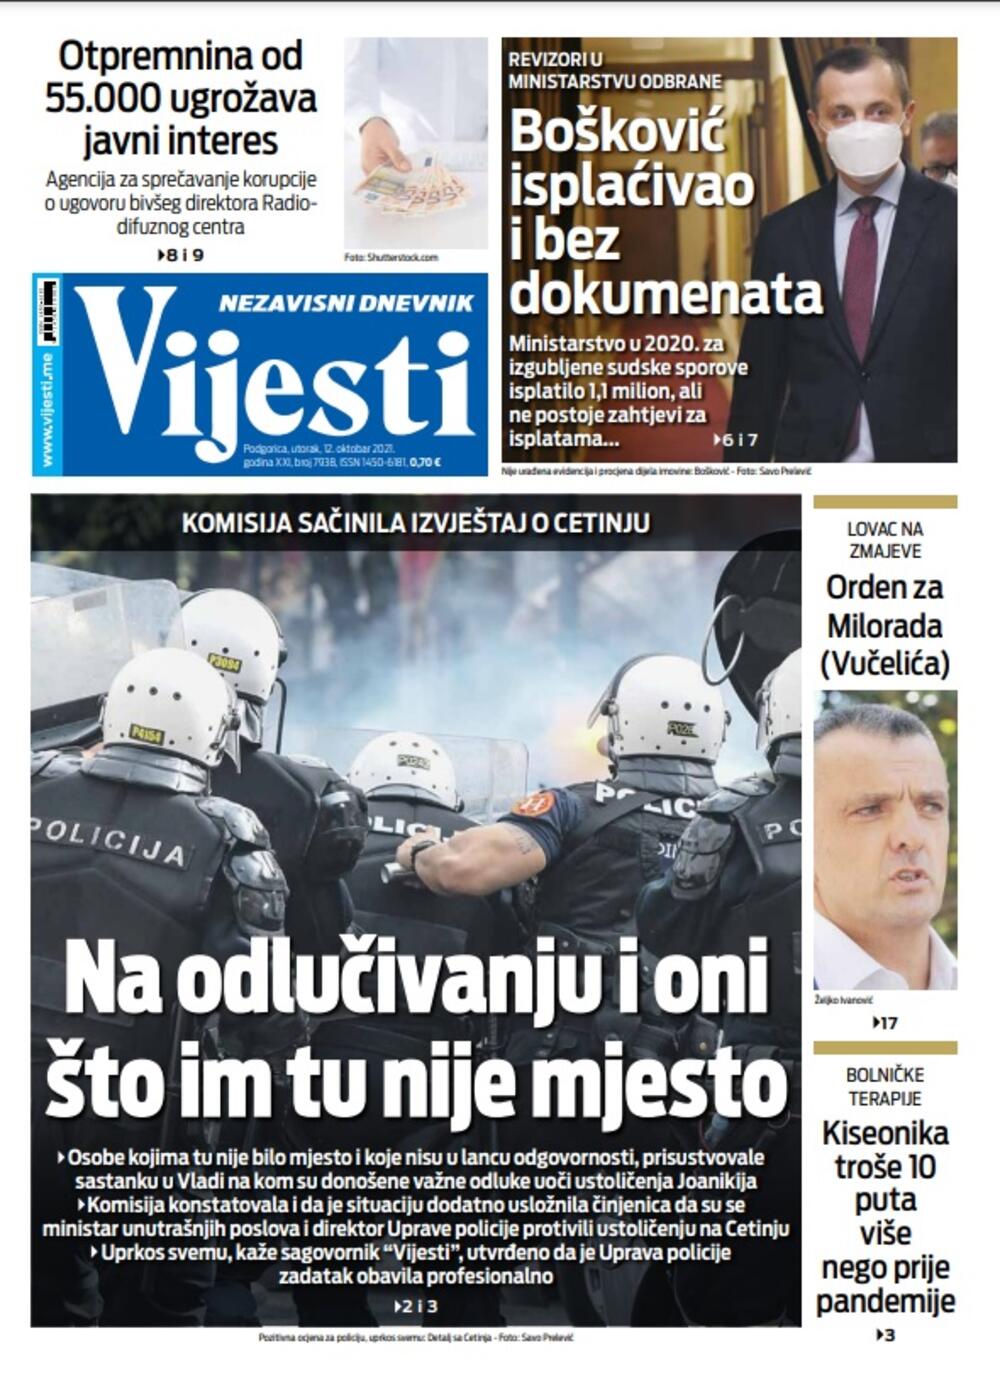 Naslovna strana "Vijesti" za 12. oktobar 2021., Foto: Vijesti